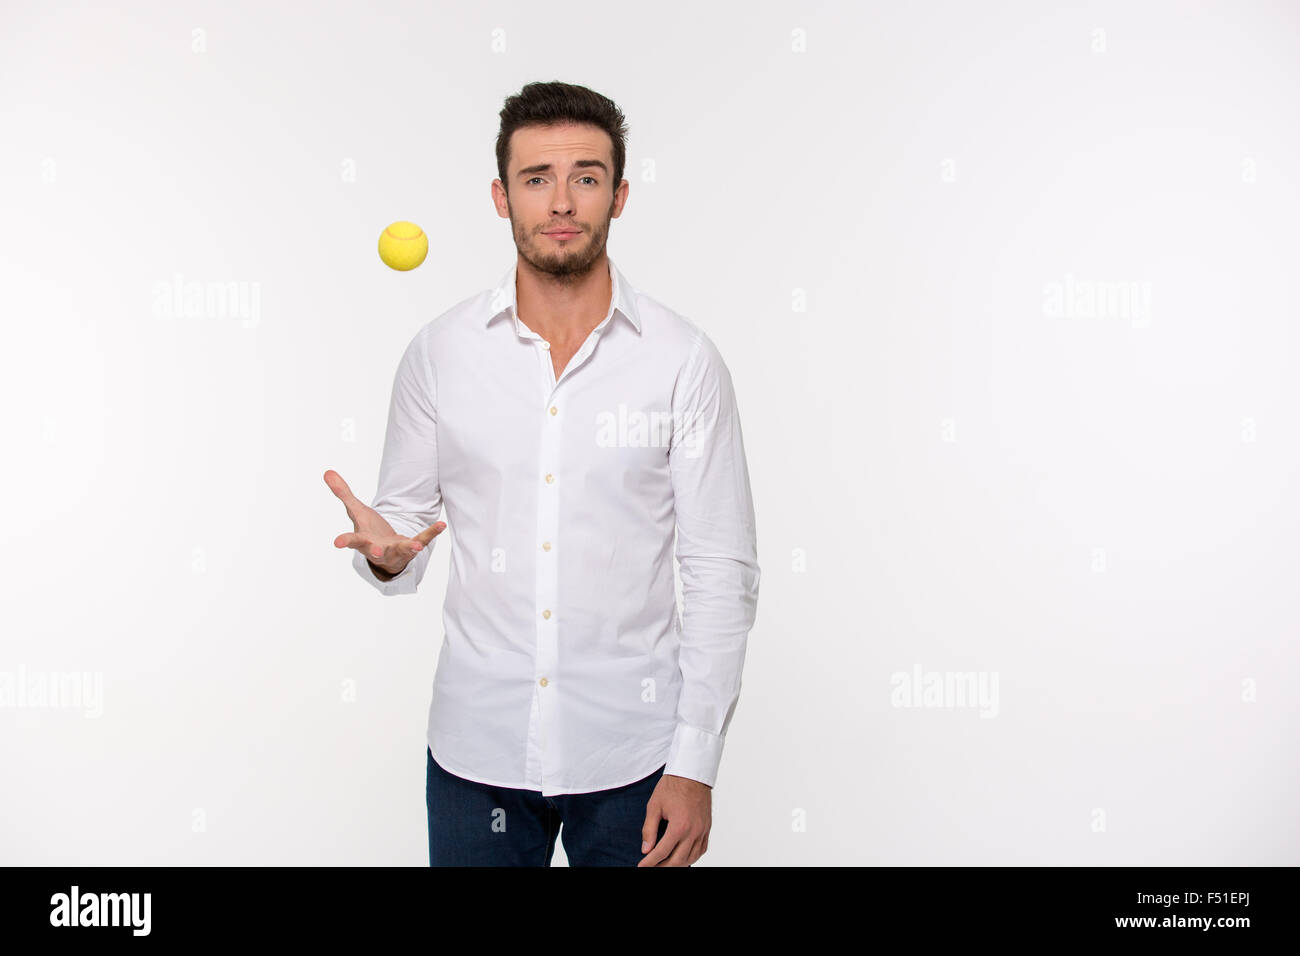 Ritratto di un uomo bello gettando palla da tennis isolato su uno sfondo bianco Foto Stock